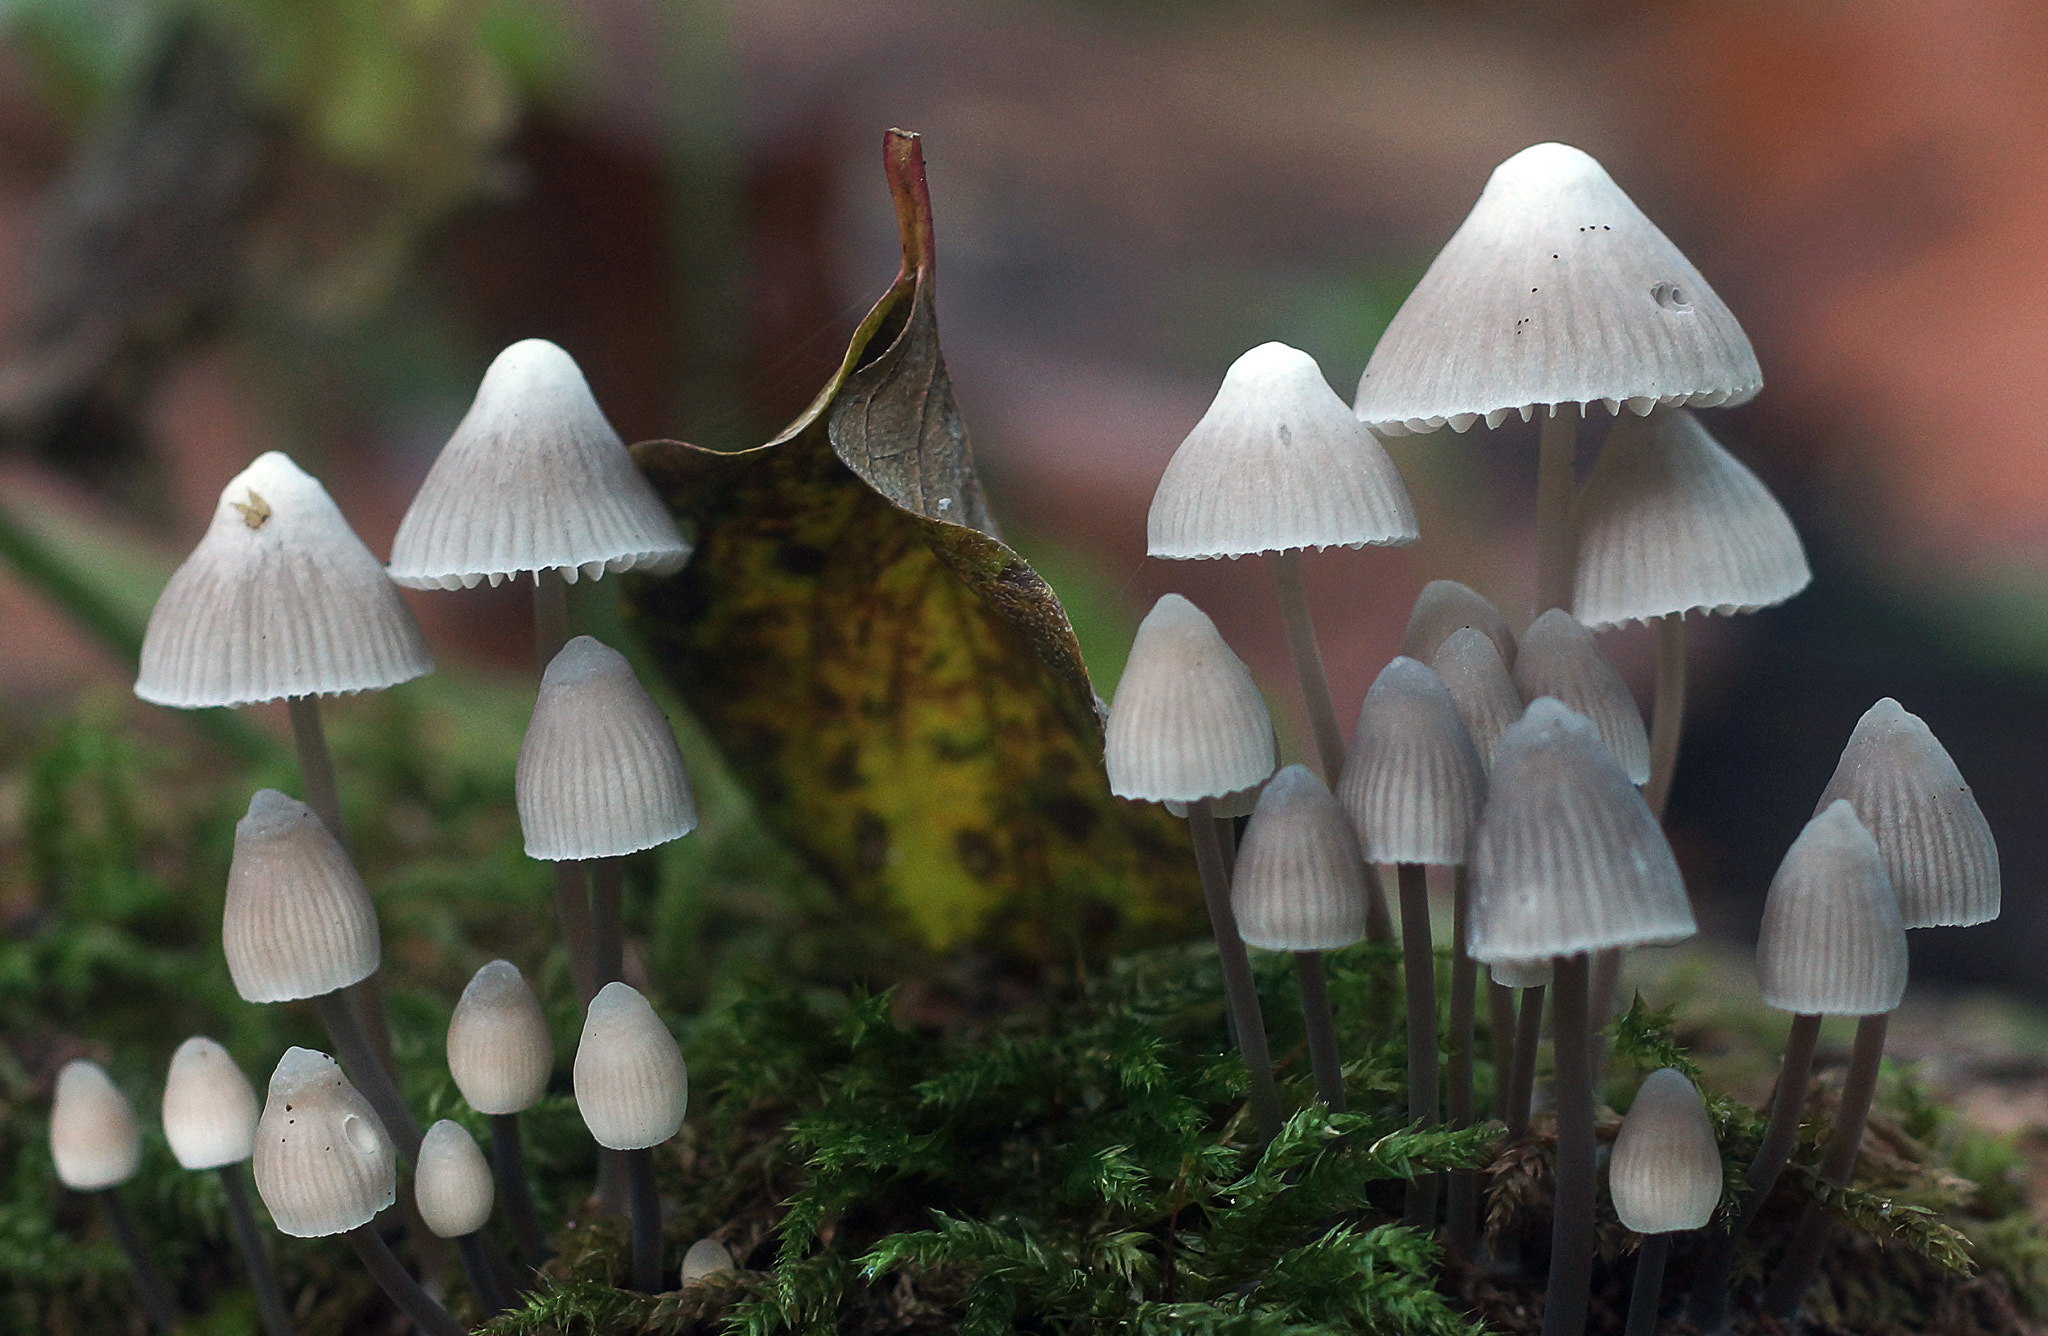 Sony SLT-A77 + MACRO 50mm F2.8 sample photo. Tiny white mushrooms photography